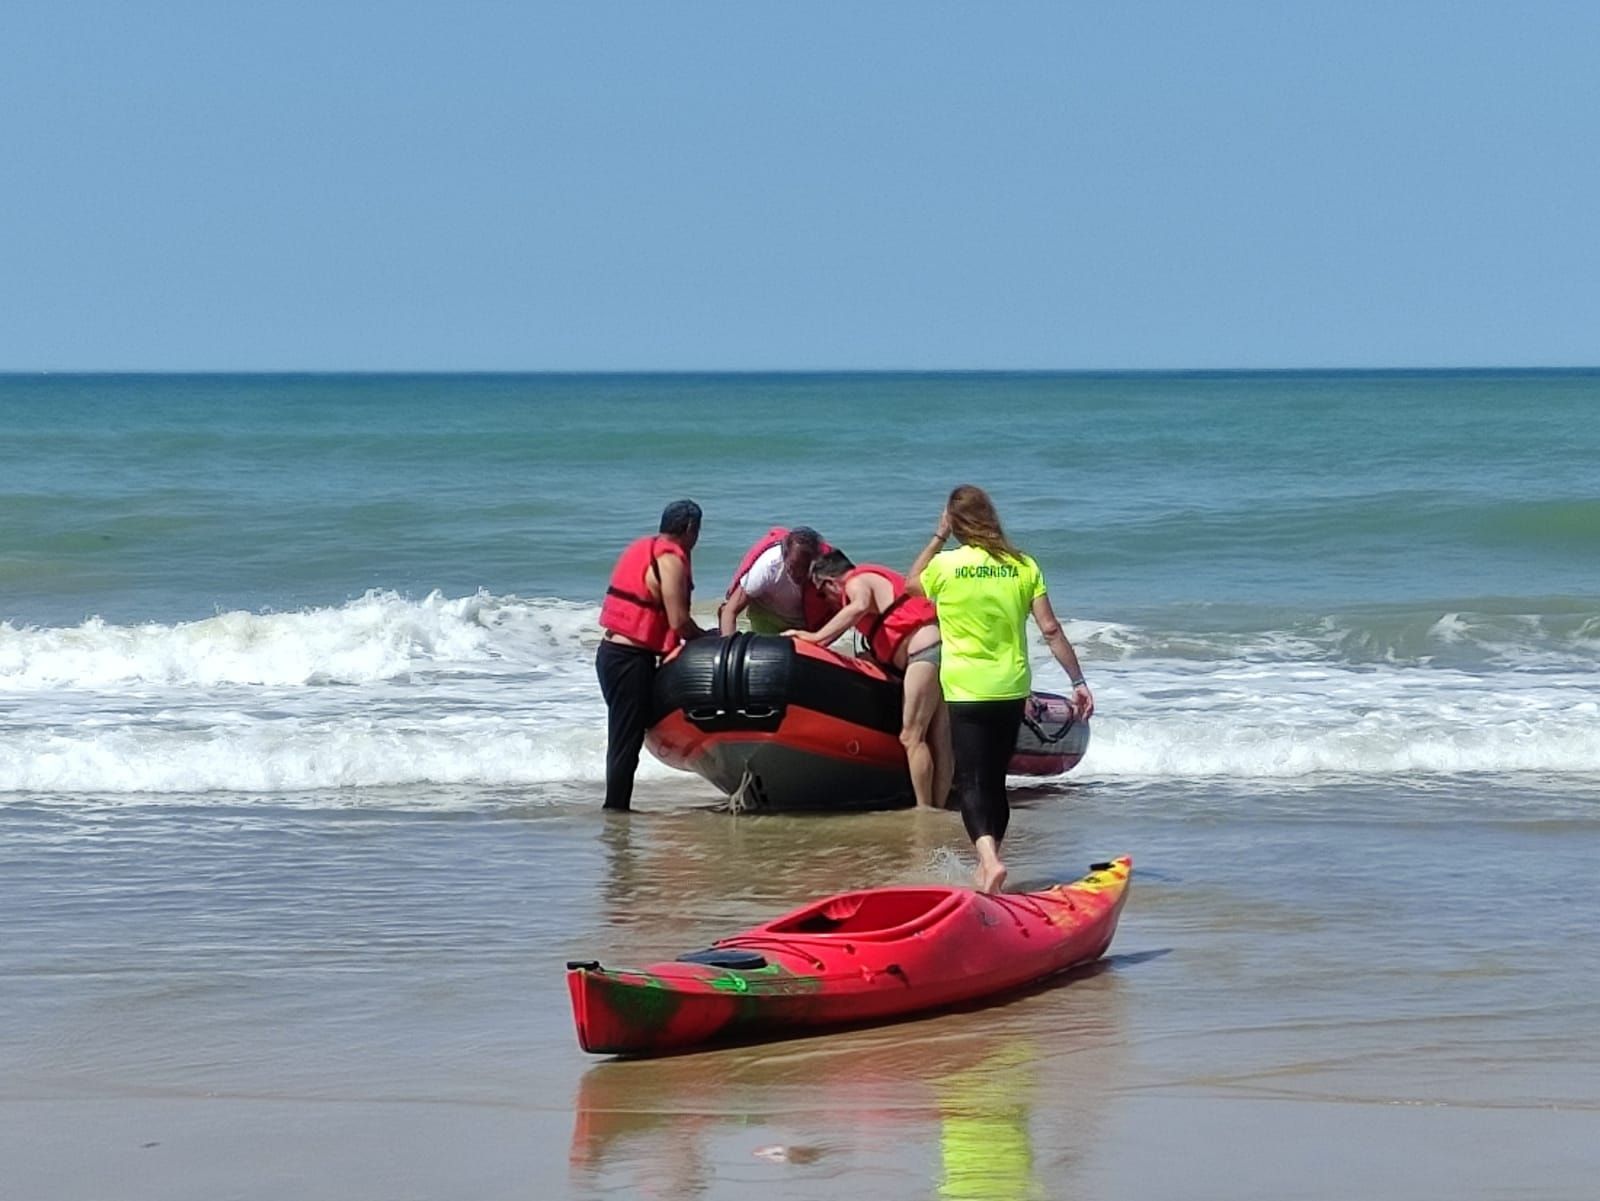 Una imagen del rescate llevado a cabo en la playa La Victoria.